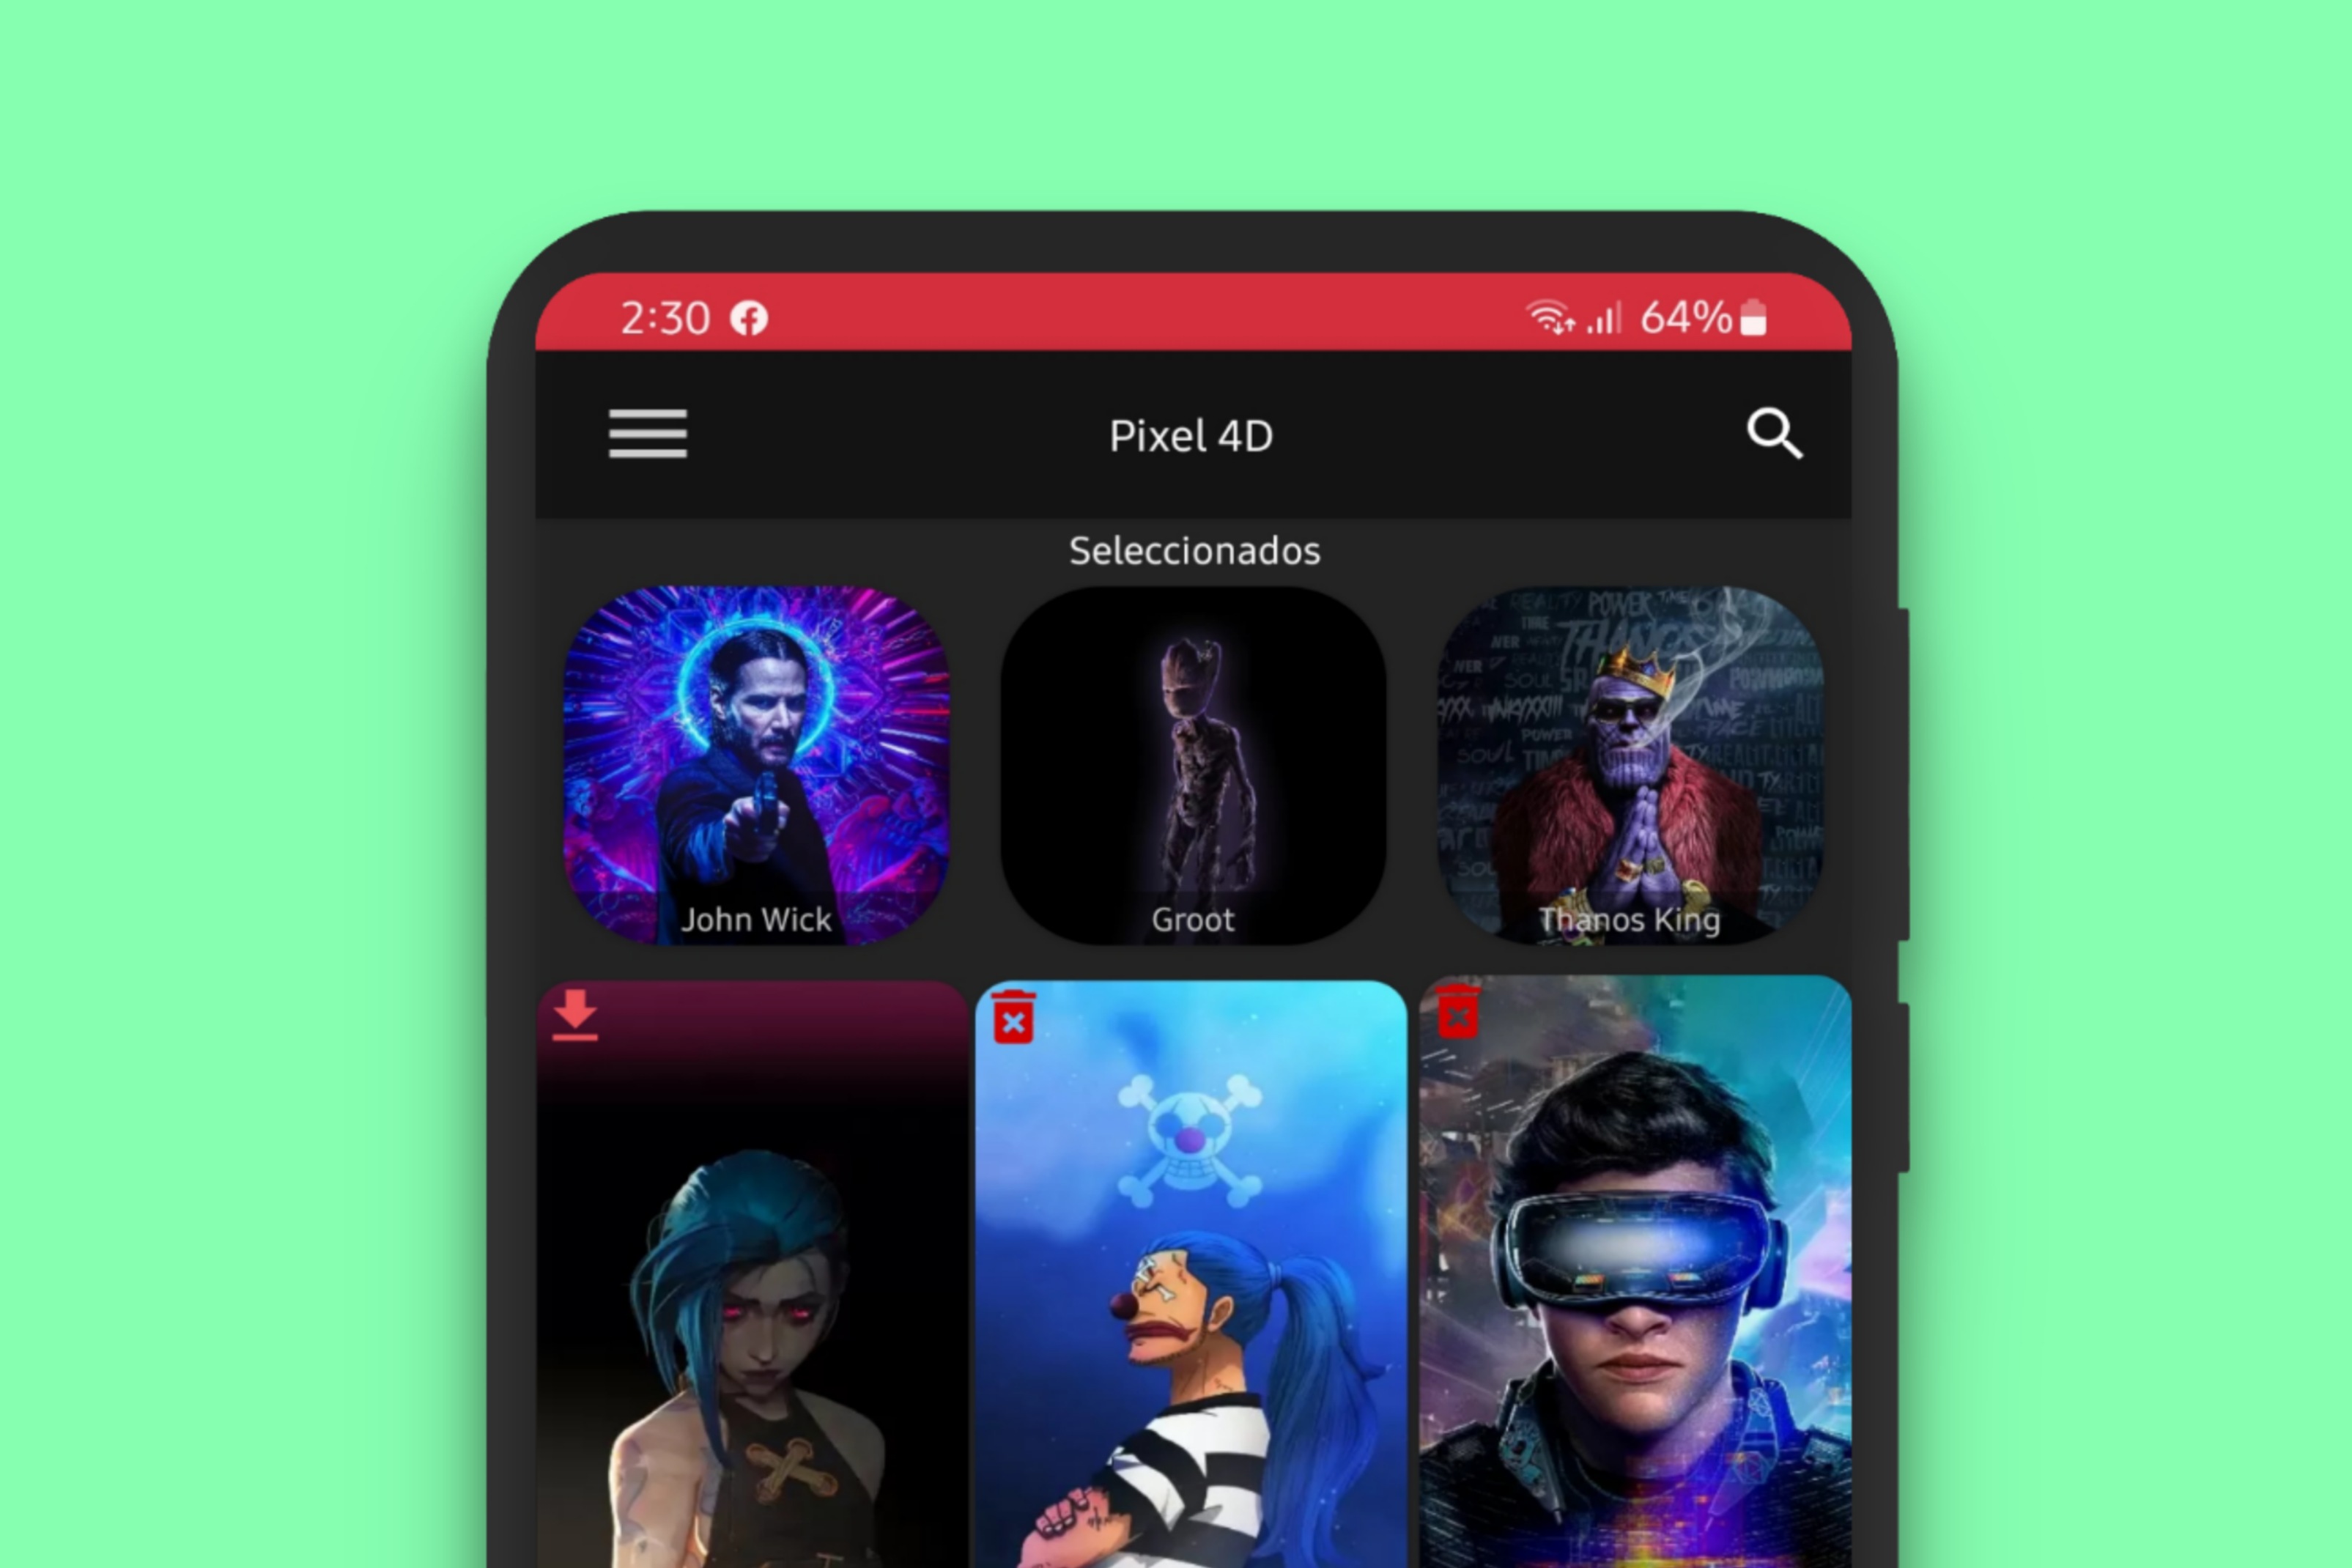 Fondos de pantalla para android | Movimiento, 4K, 4D y Más - elandroidhd